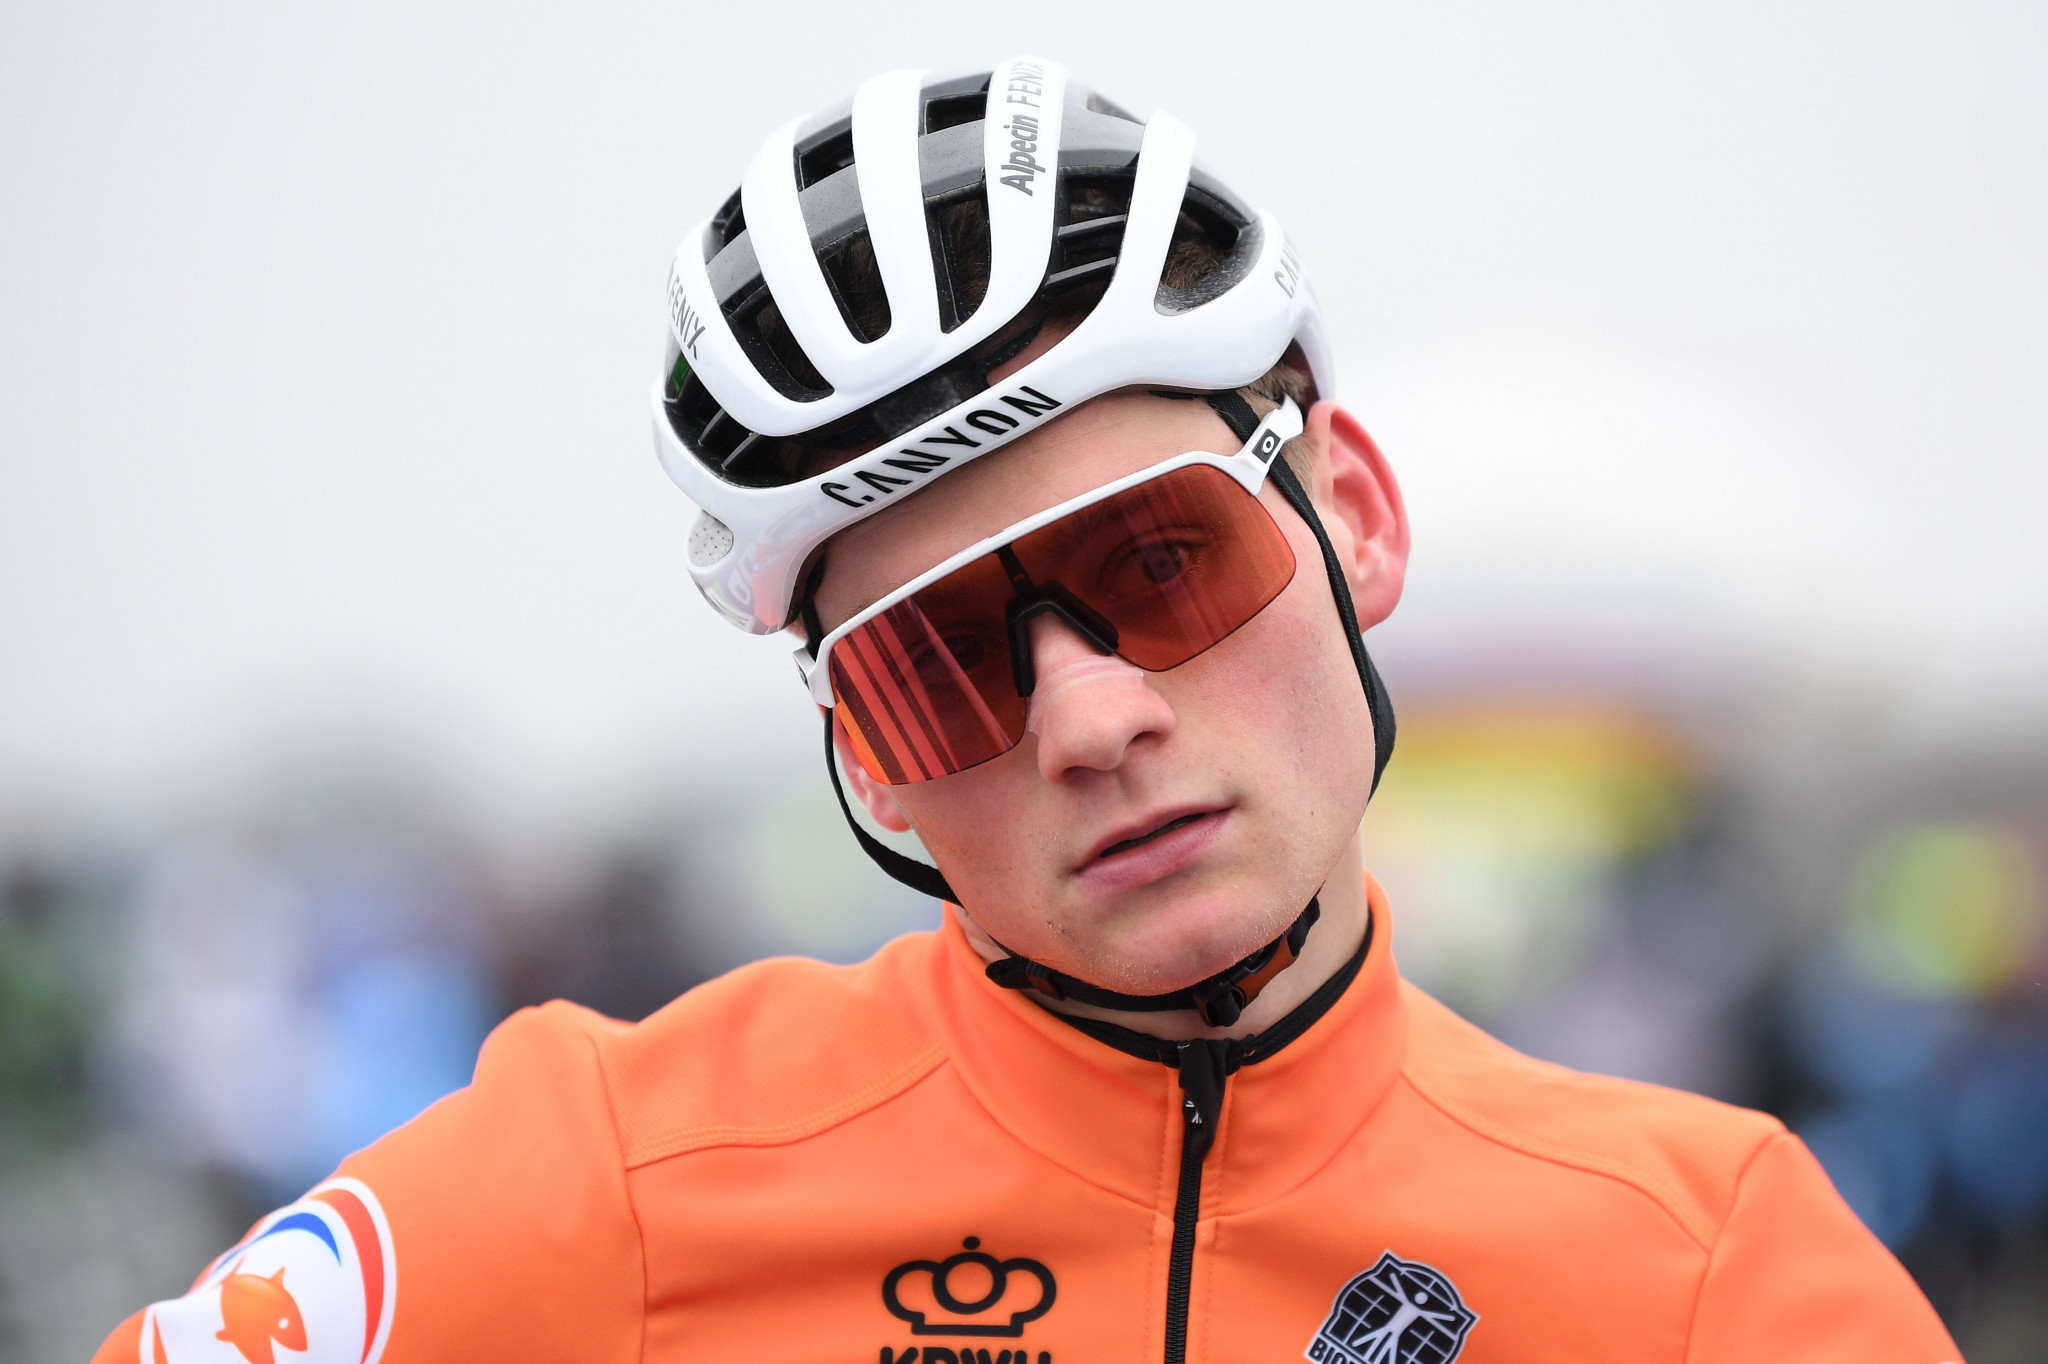 Van der Paul pourrait quitter le Tour de France tôt pour se concentrer sur Tokyo 2020